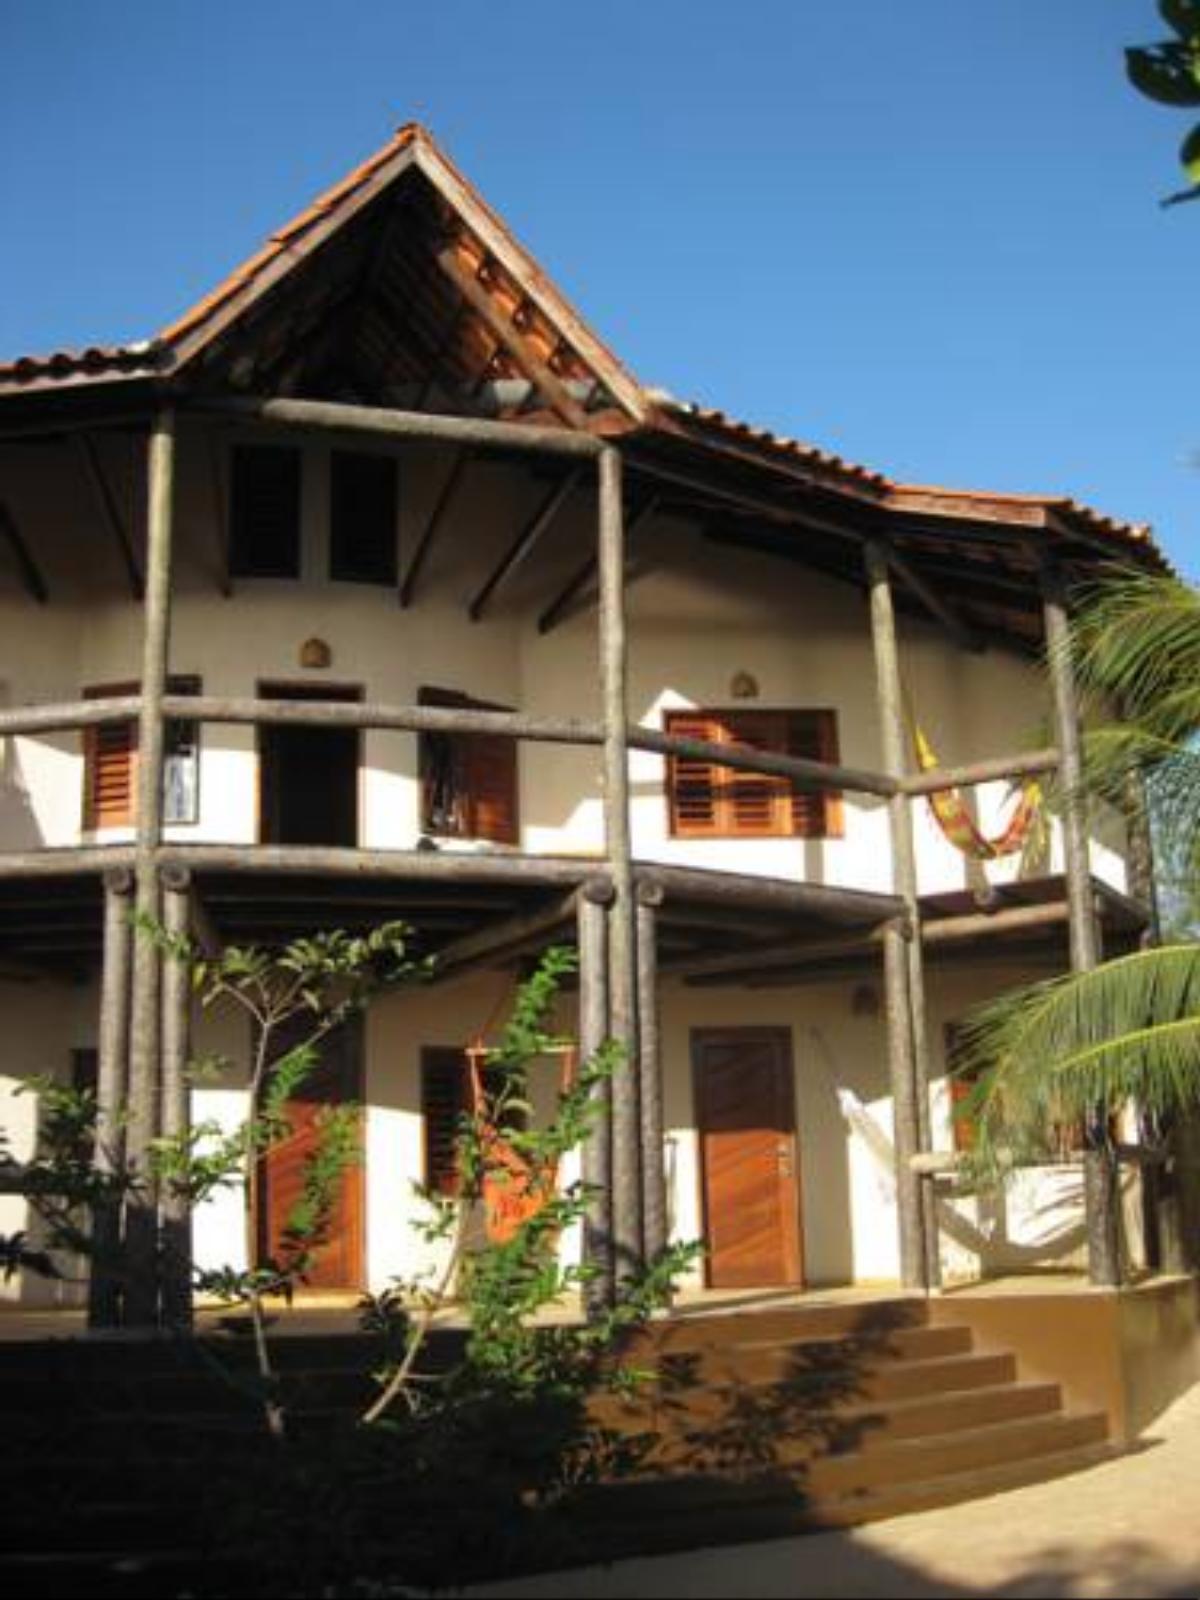 Casa do Kite Hotel Canoa Quebrada Brazil